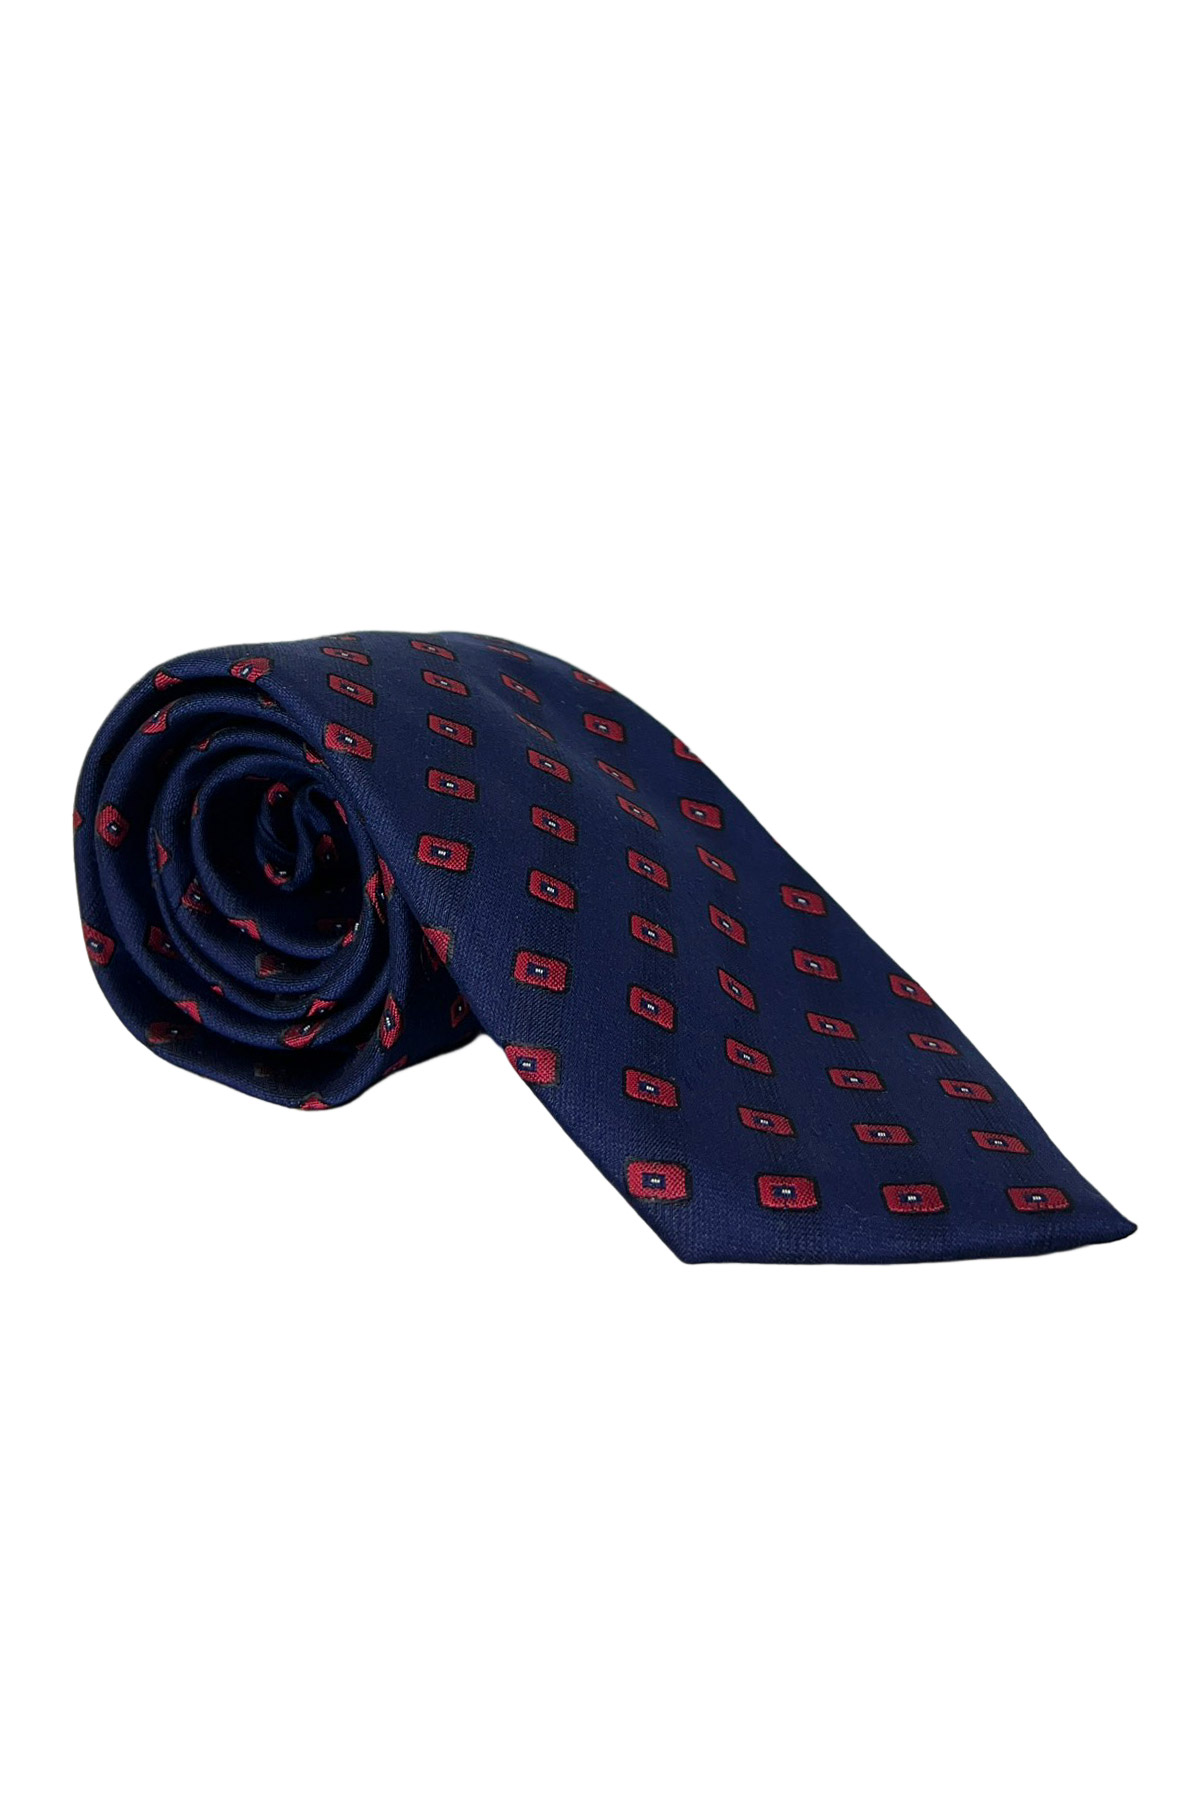 Cravatta uomo navy blu Fantasia Rossa 8cm da cerimonia elegante 100% seta